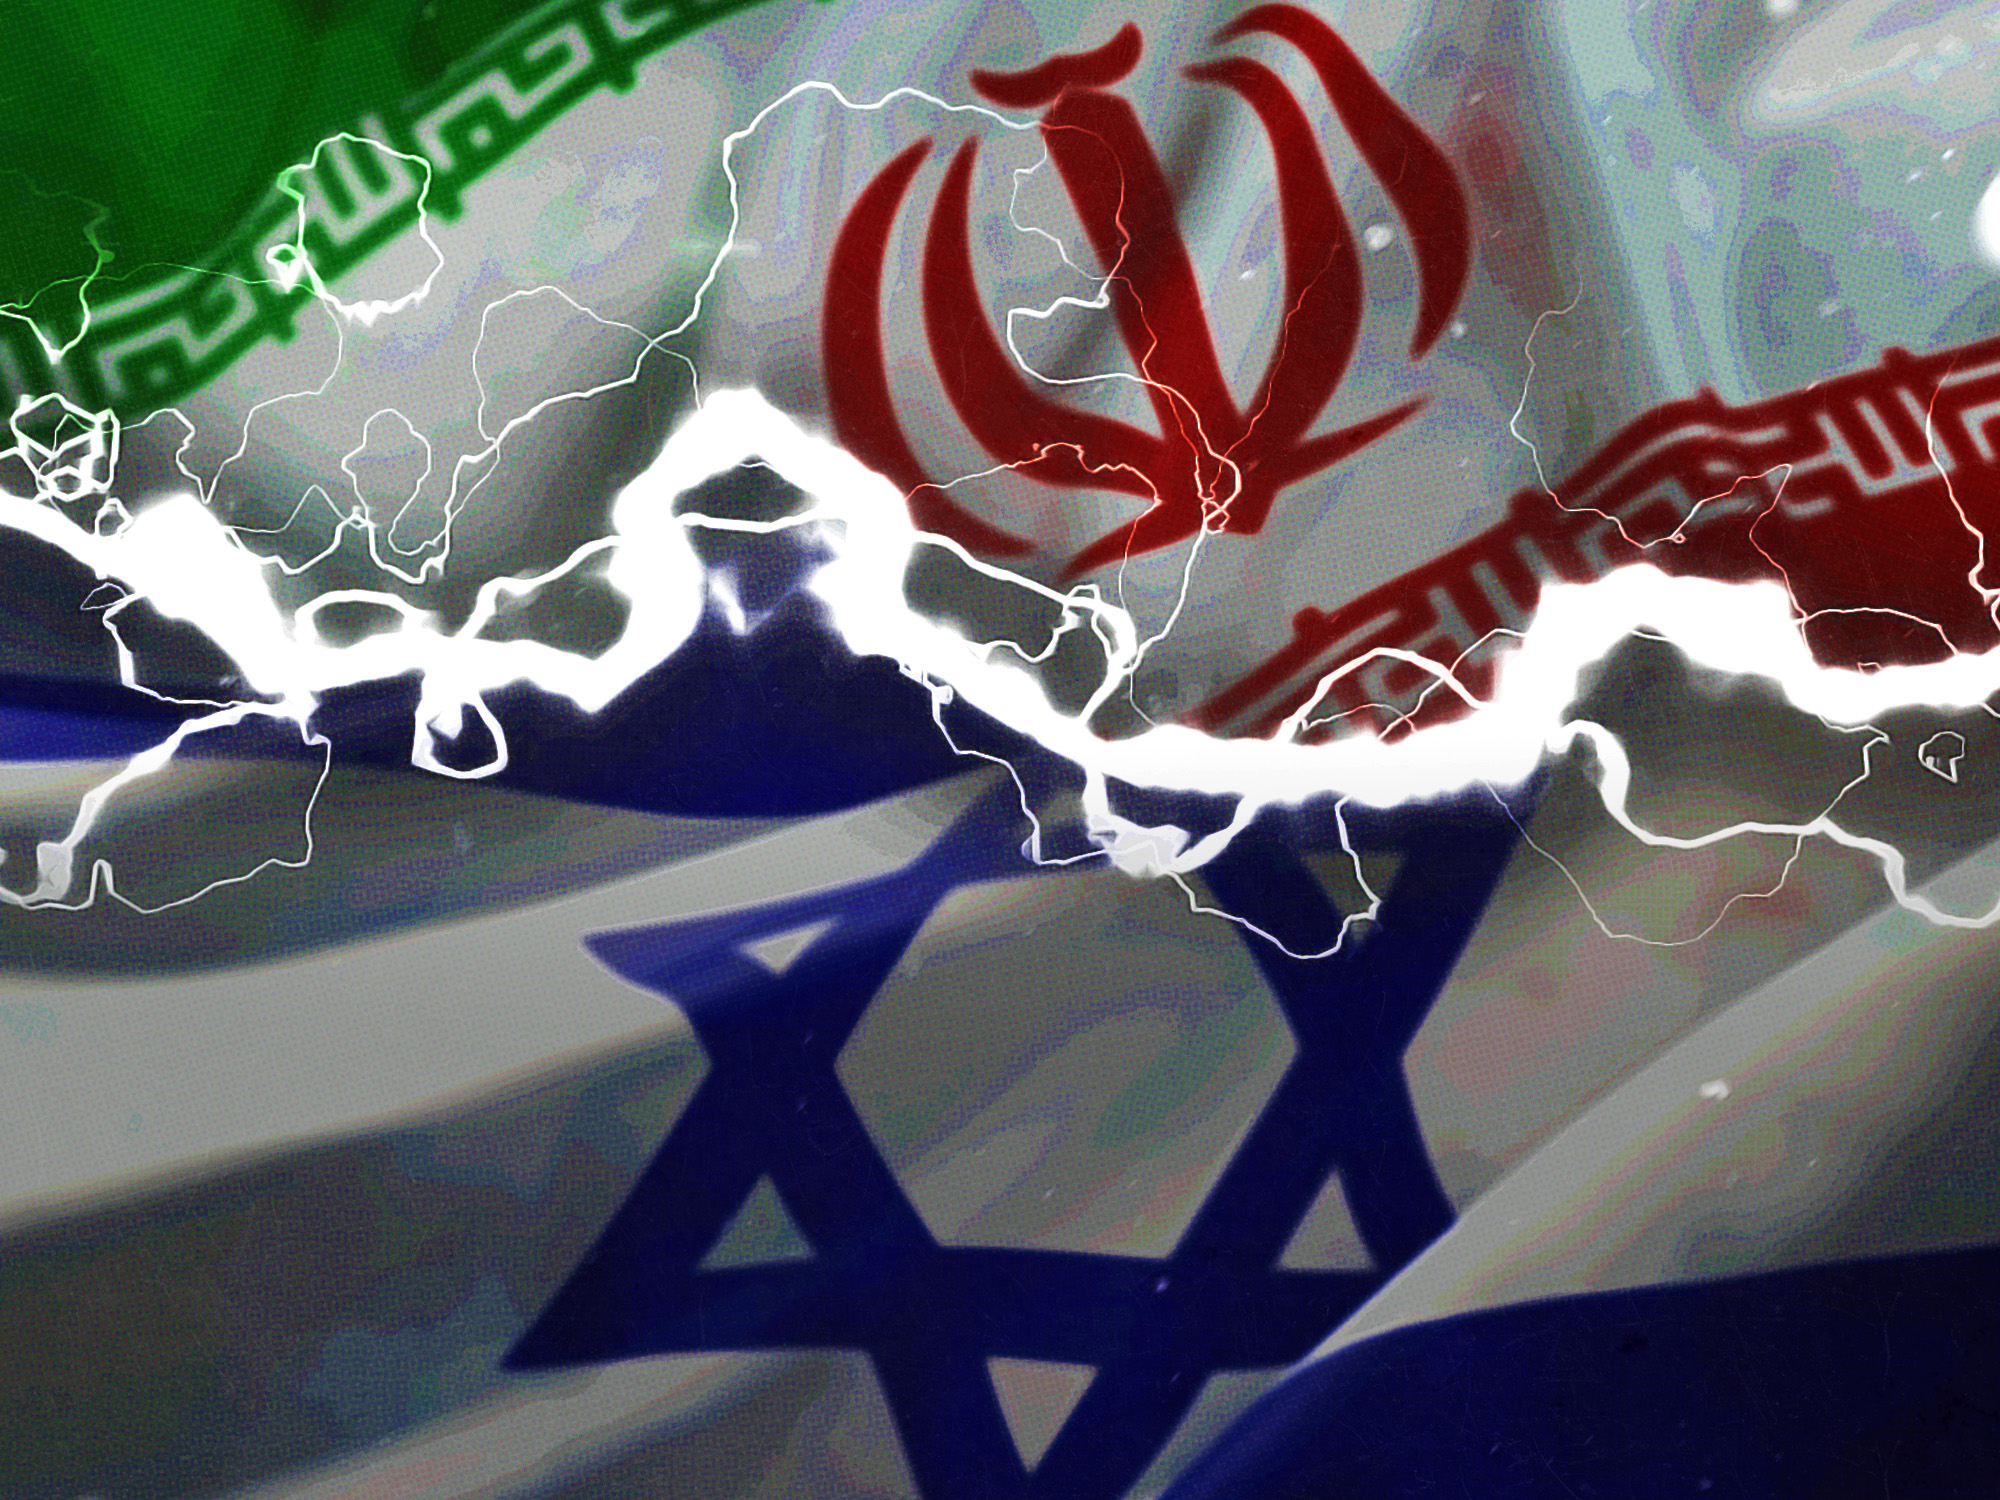 Επίθεση Ιράν σε Ισραήλ - Ανάλυση BBC: Γιατί είναι εχθροί;